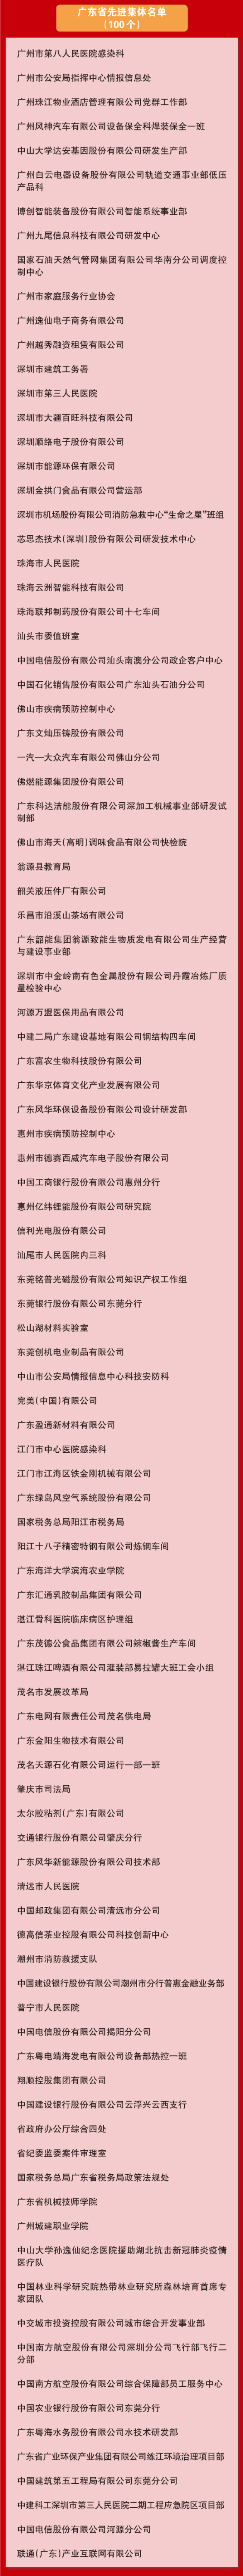 广东省劳动模范名单--04.jpg